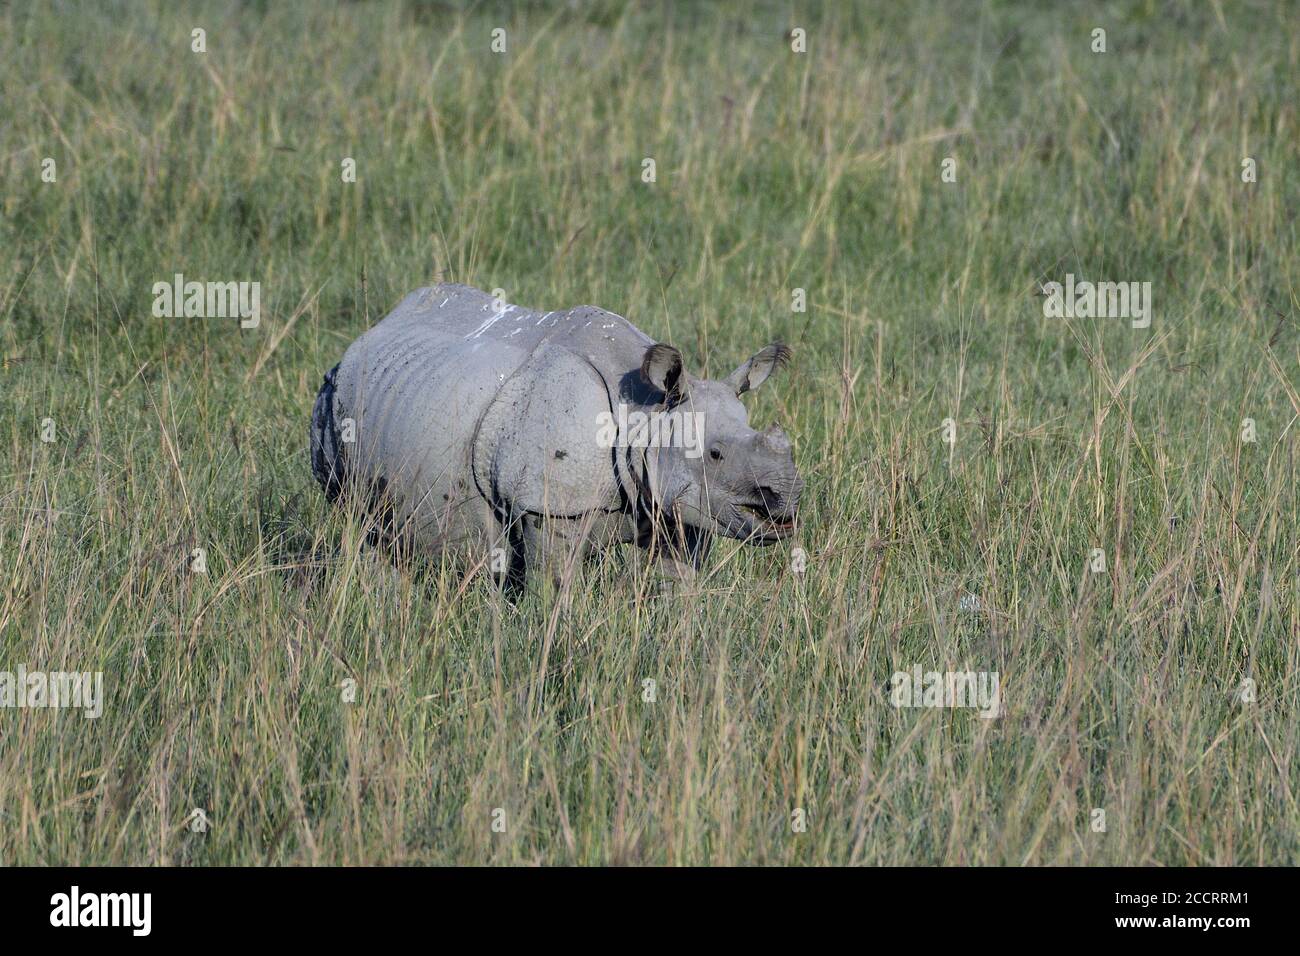 Plus un rhinocéros à cornes broute dans le champ Banque D'Images